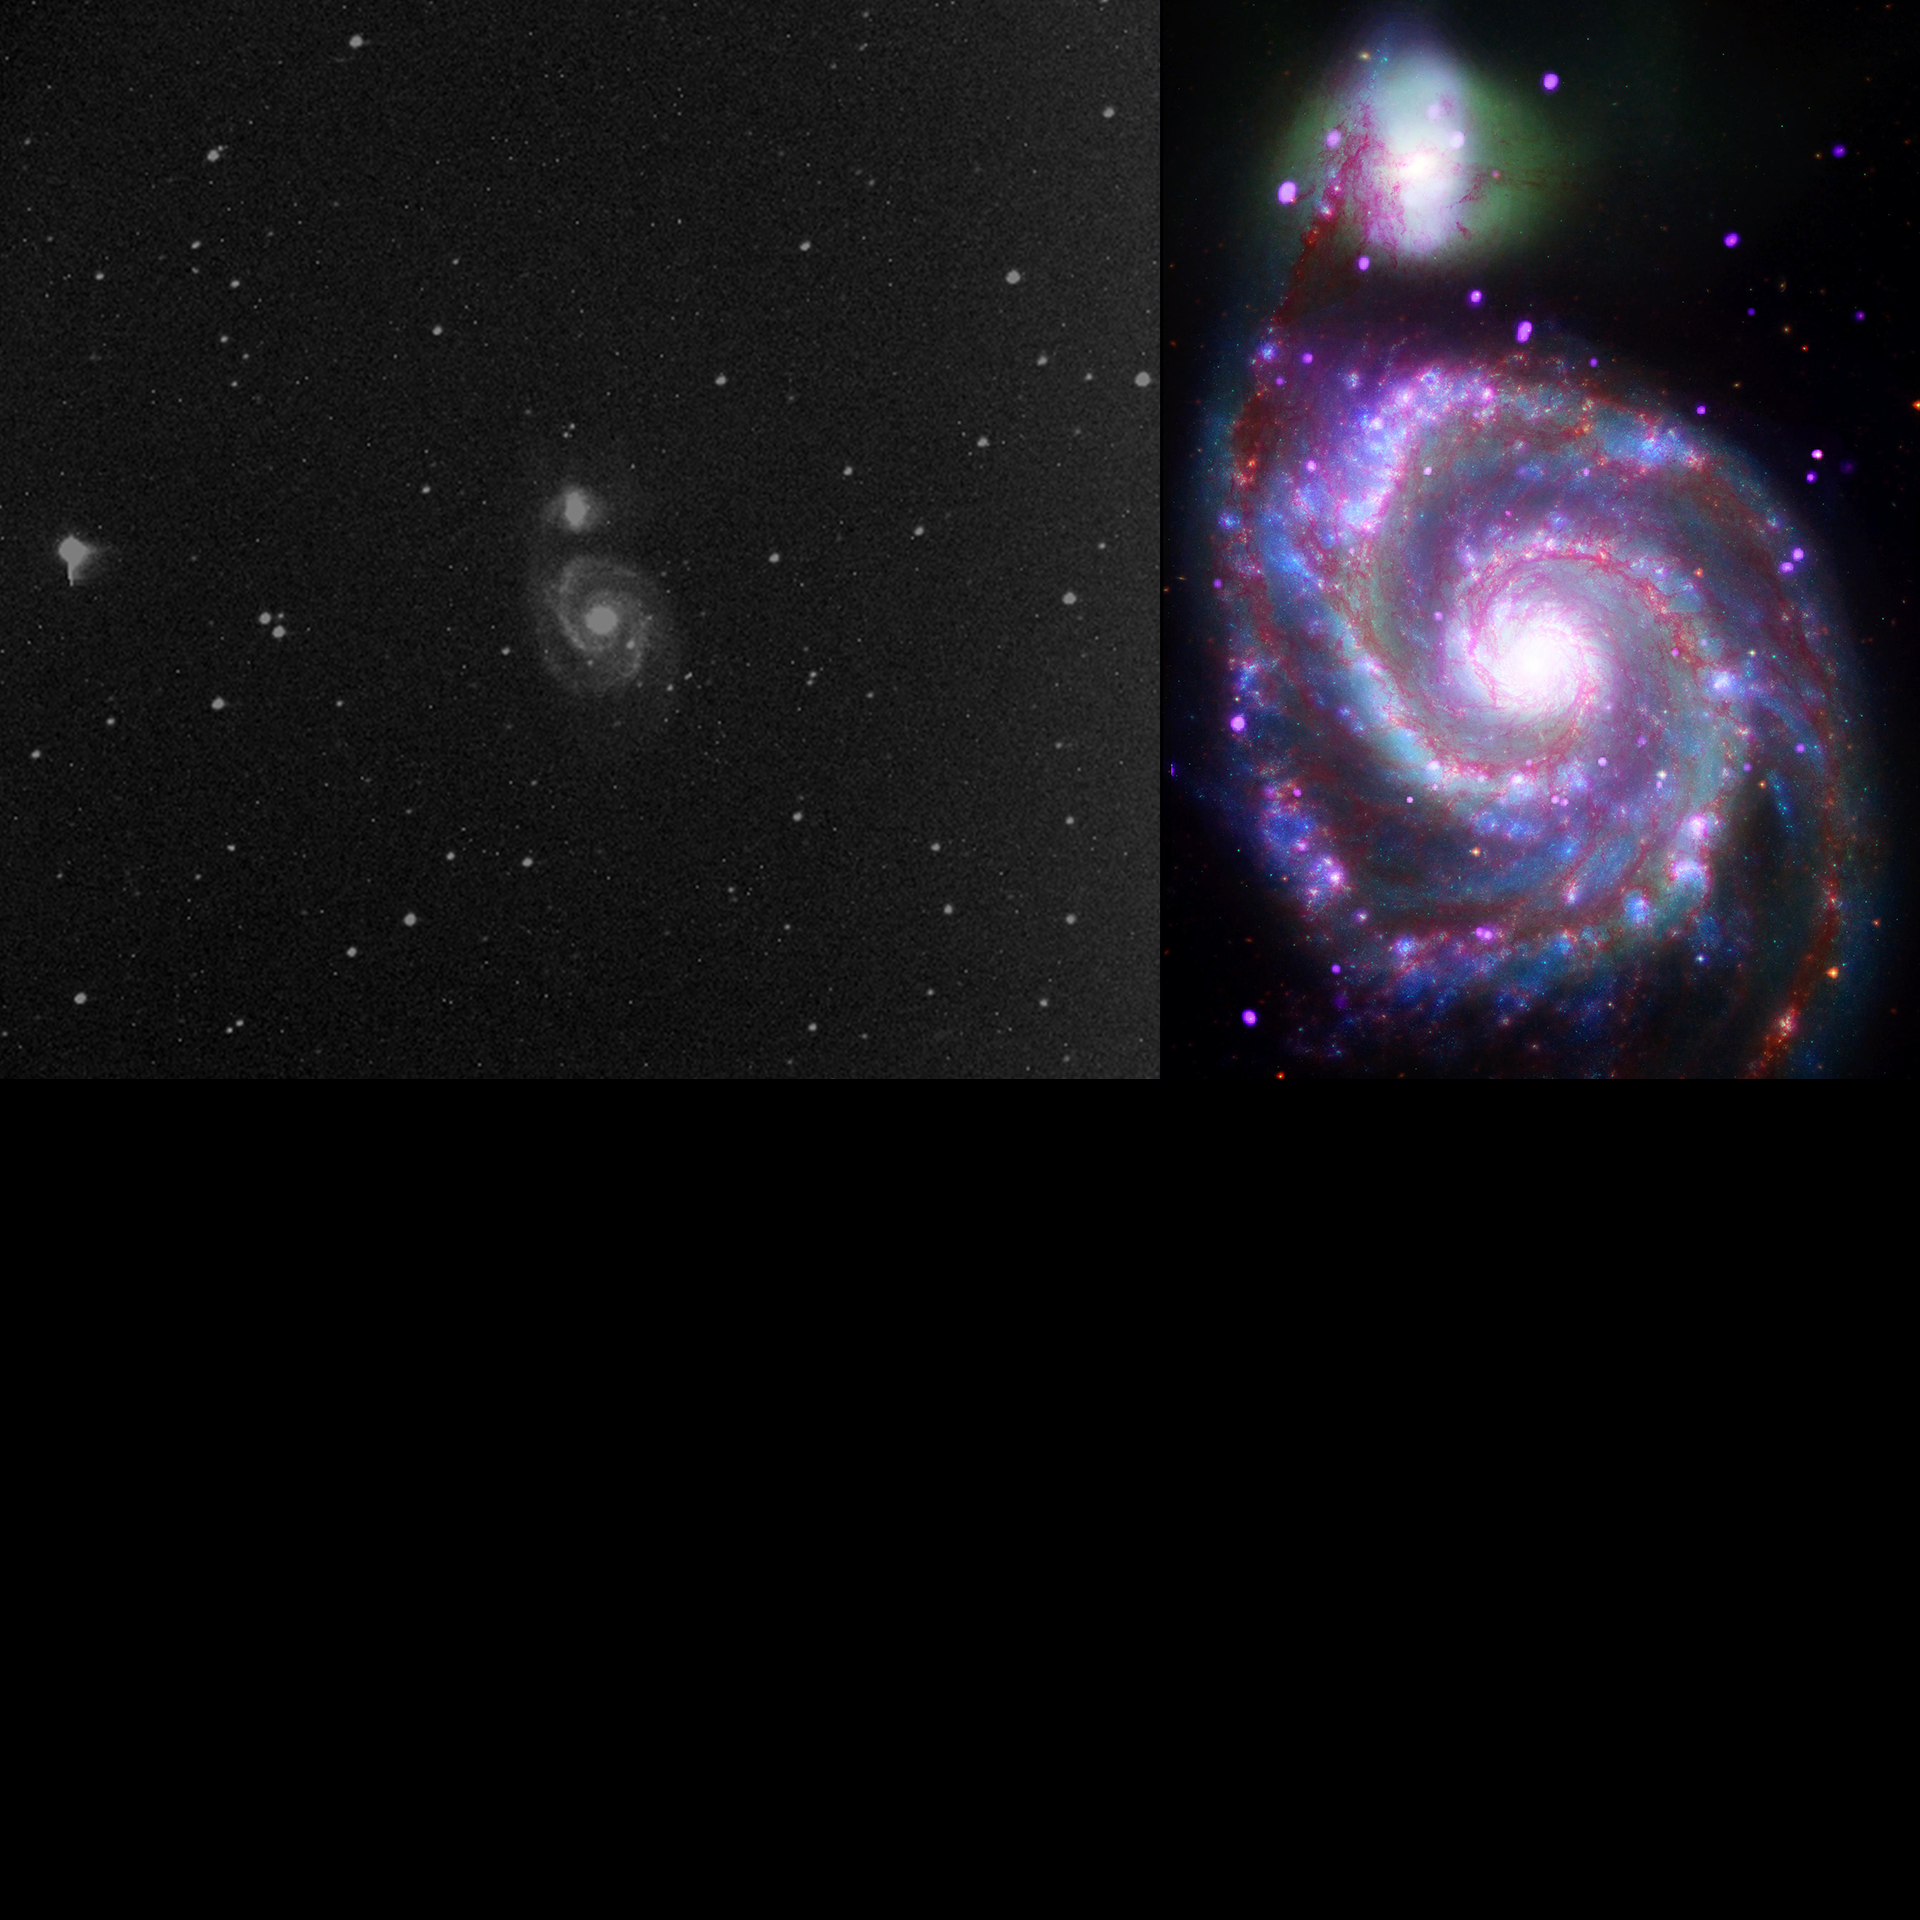 Junquan Y. vs Chandra & Hubble & Spitzer